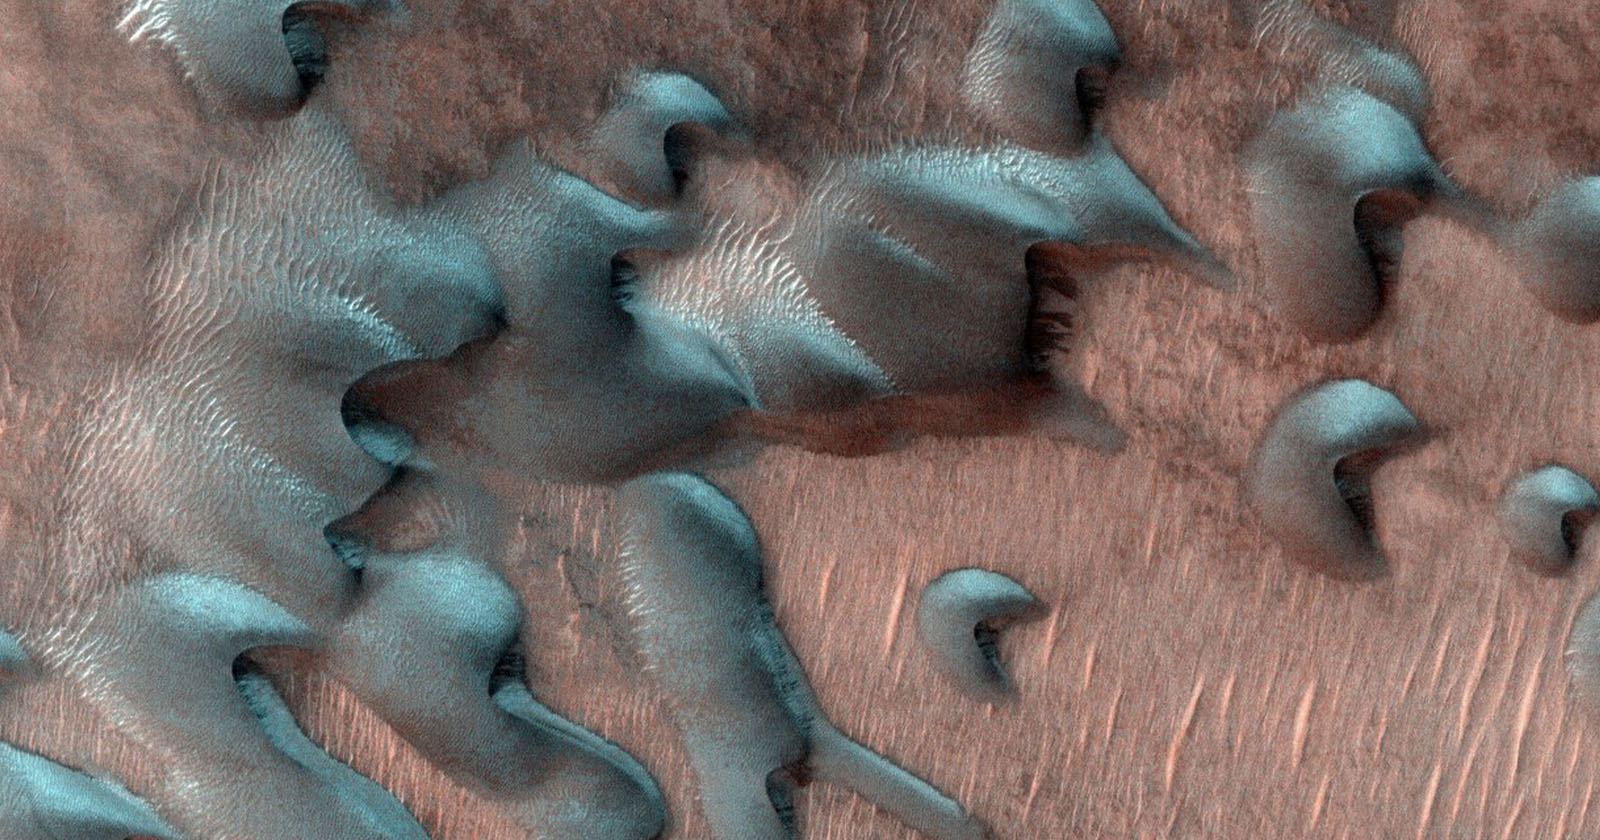 Mars’ta Kış: NASA, Mars’ın Don ve Buzunu Resimlerle Açıklıyor